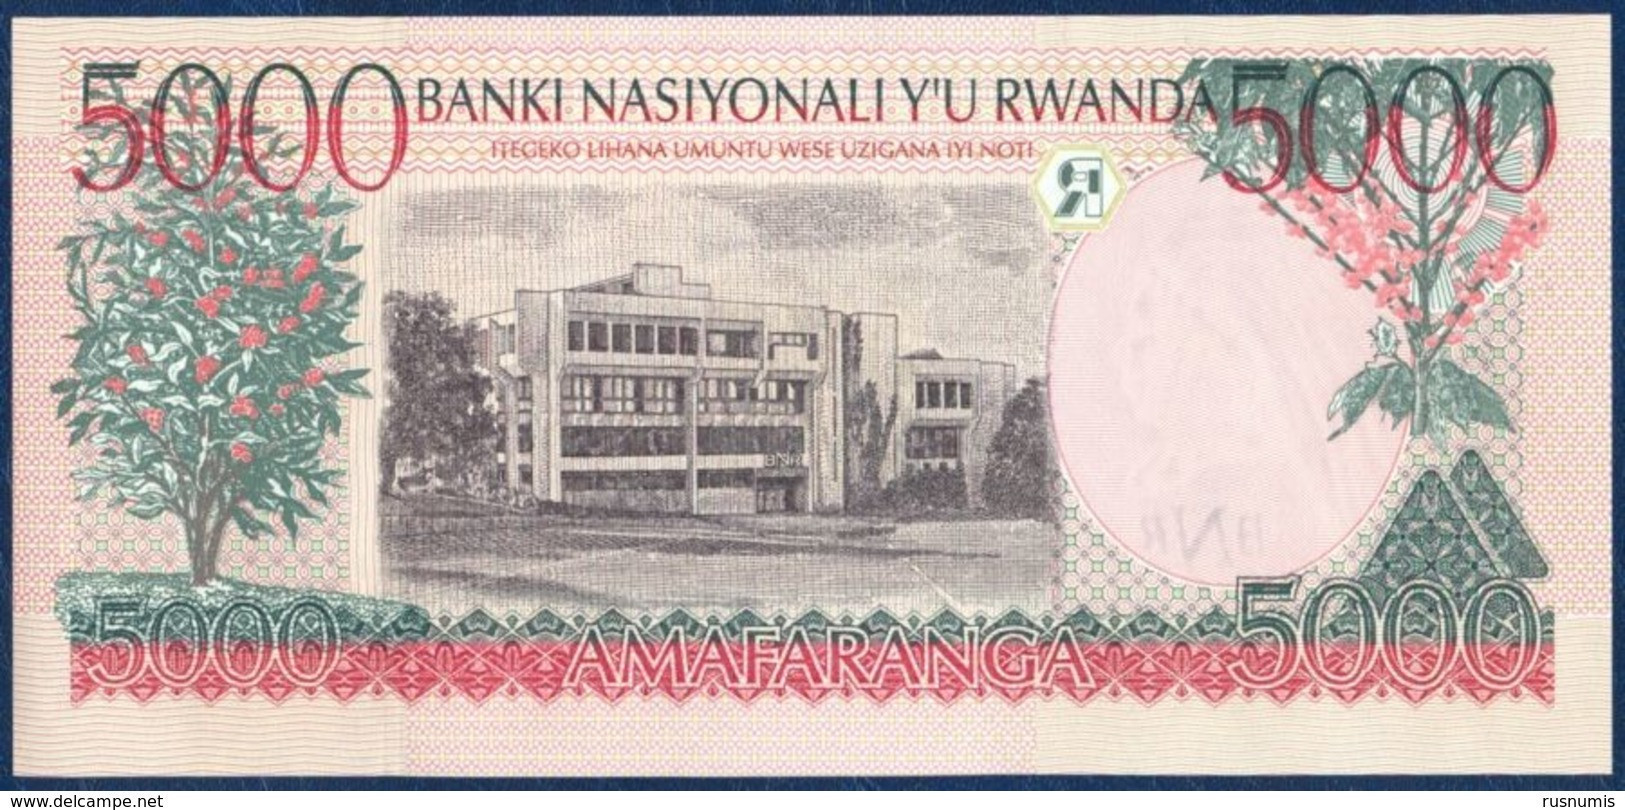 RWANDA 5000 FRANCS P-28b Dancers - National Bank Of Rwanda Building, Kigali 1998 UNC - Rwanda